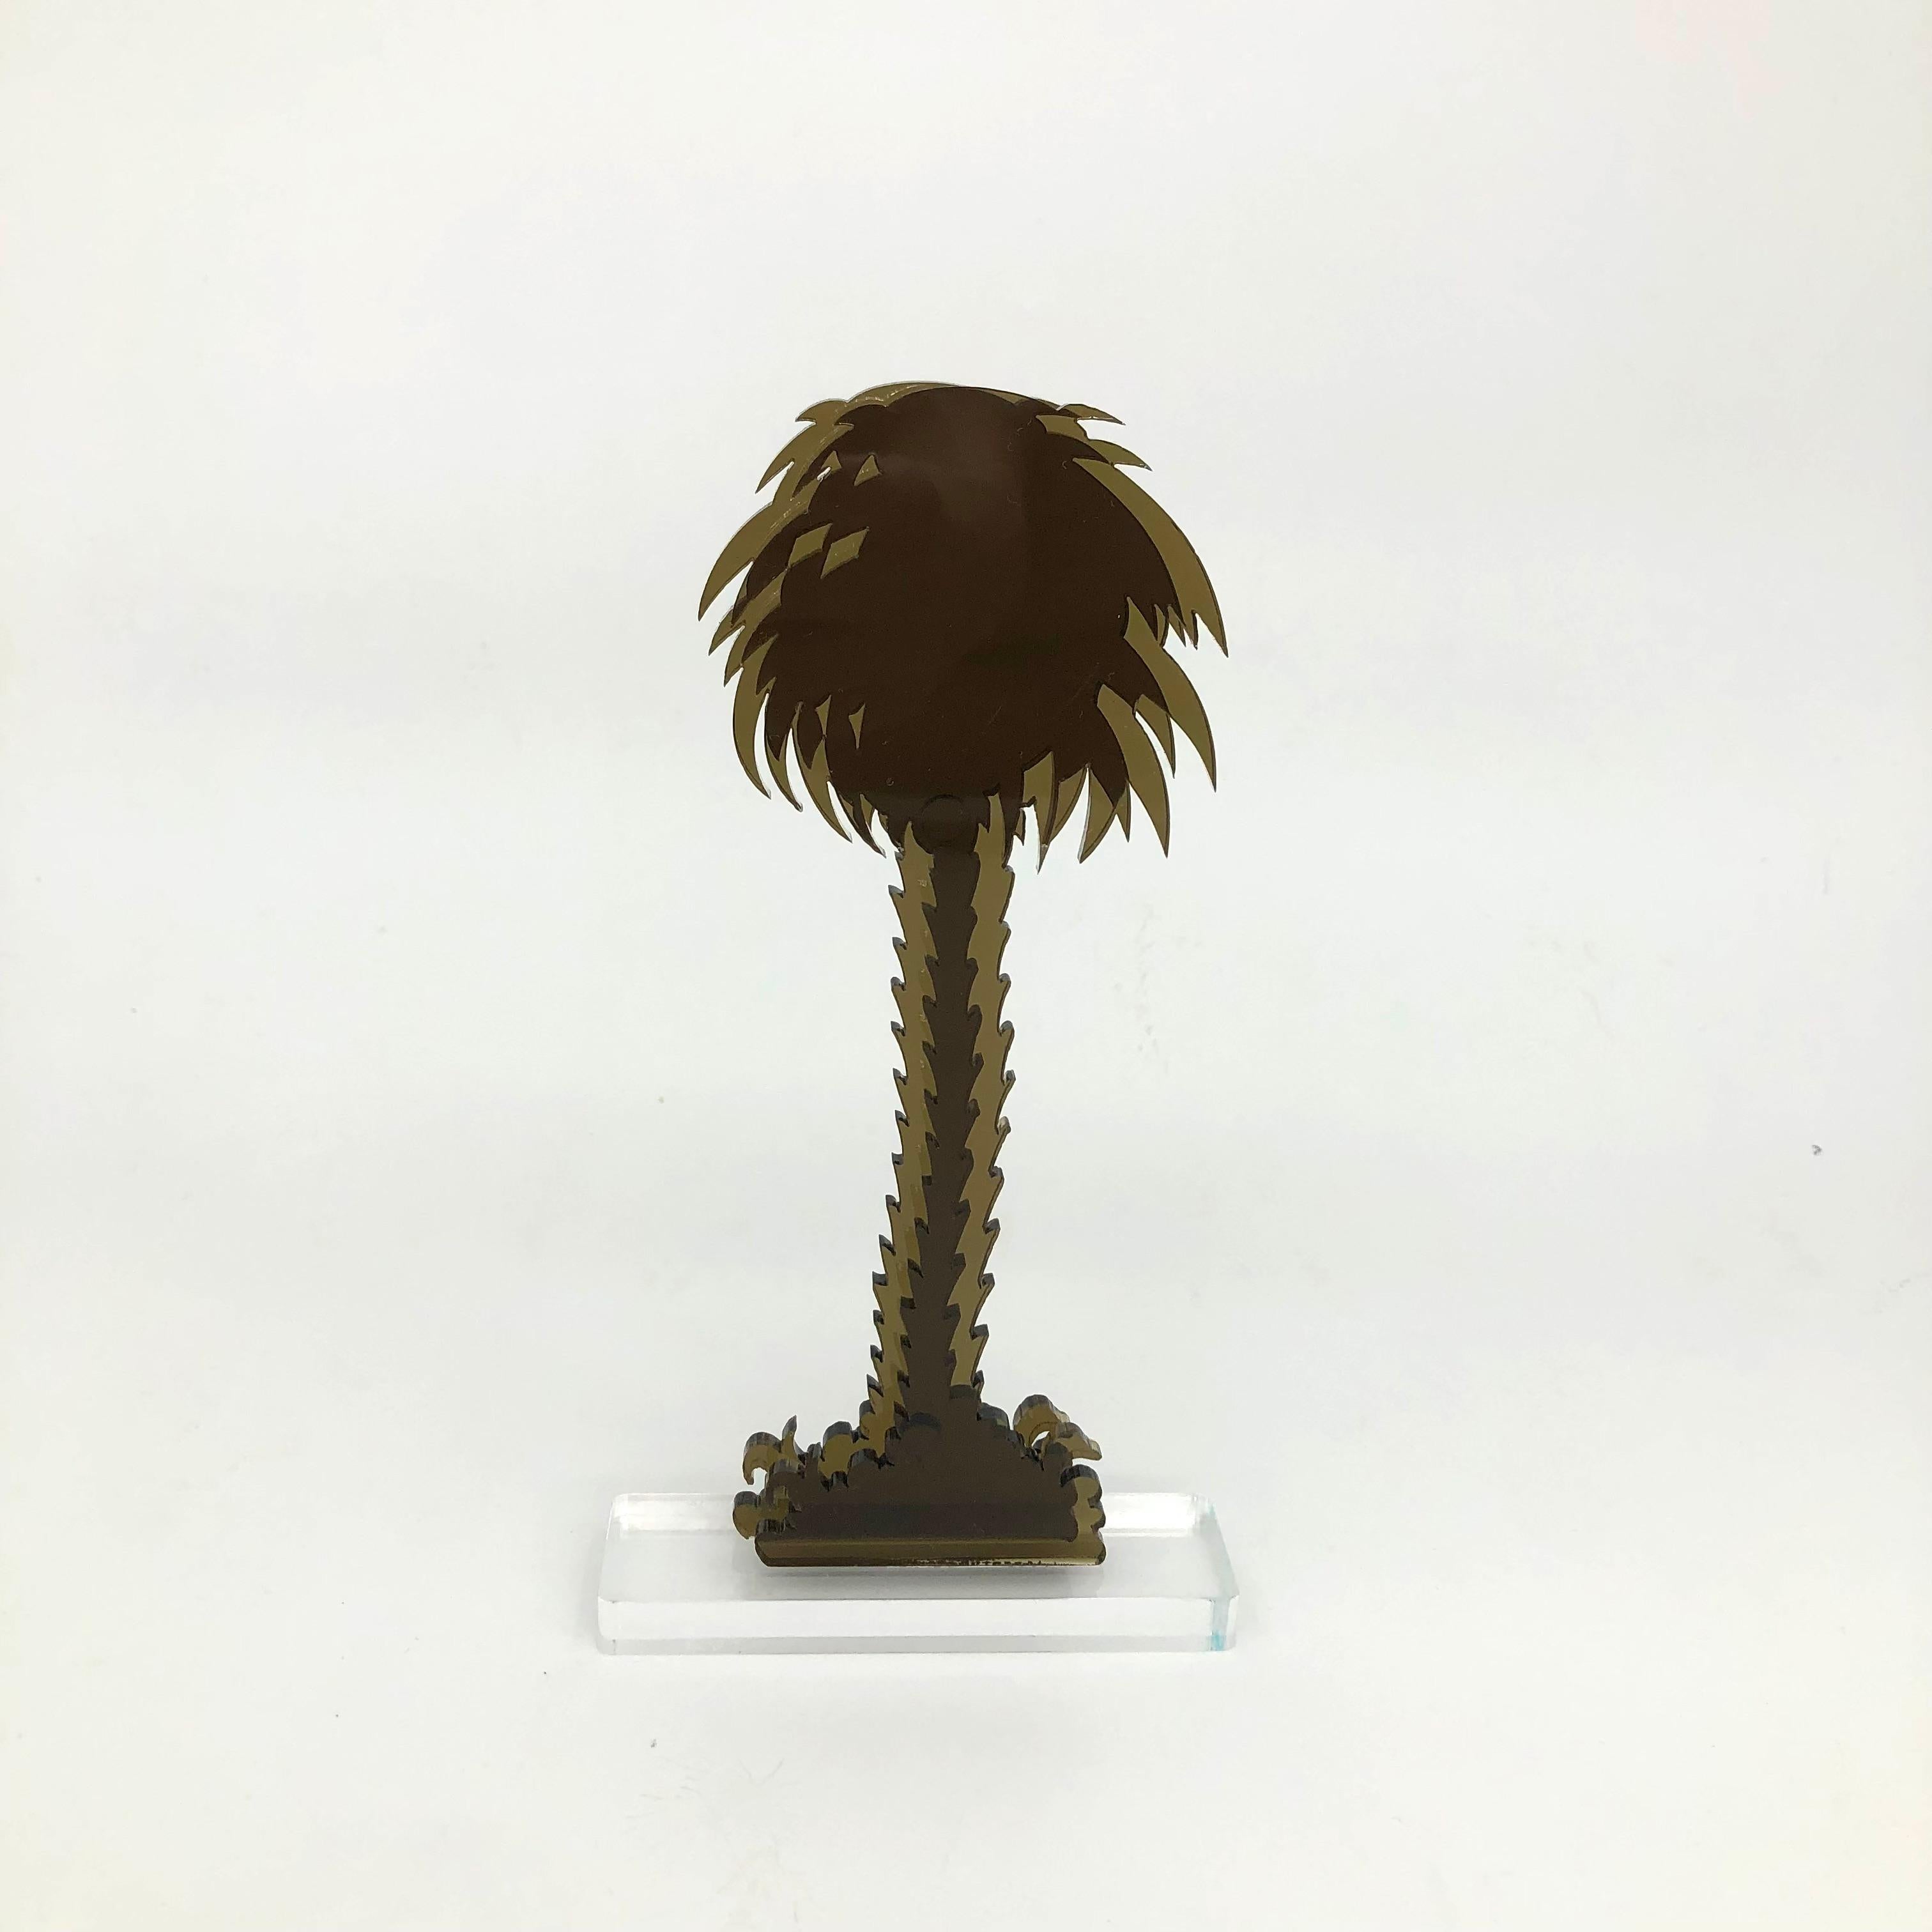 Gino MAROTTA (1935-2012)
Palma artificiale, 2010
Edition Artbeat arrêtée
Sculpture, multiple en méthacrylate coloré bronze et découpé. Signé sur la base.
Haut. : 19 cm Länge : 10 cm

Gino MAROTTA (1935-2012)
Palma artificiale, 2010
Edition Artbeat,